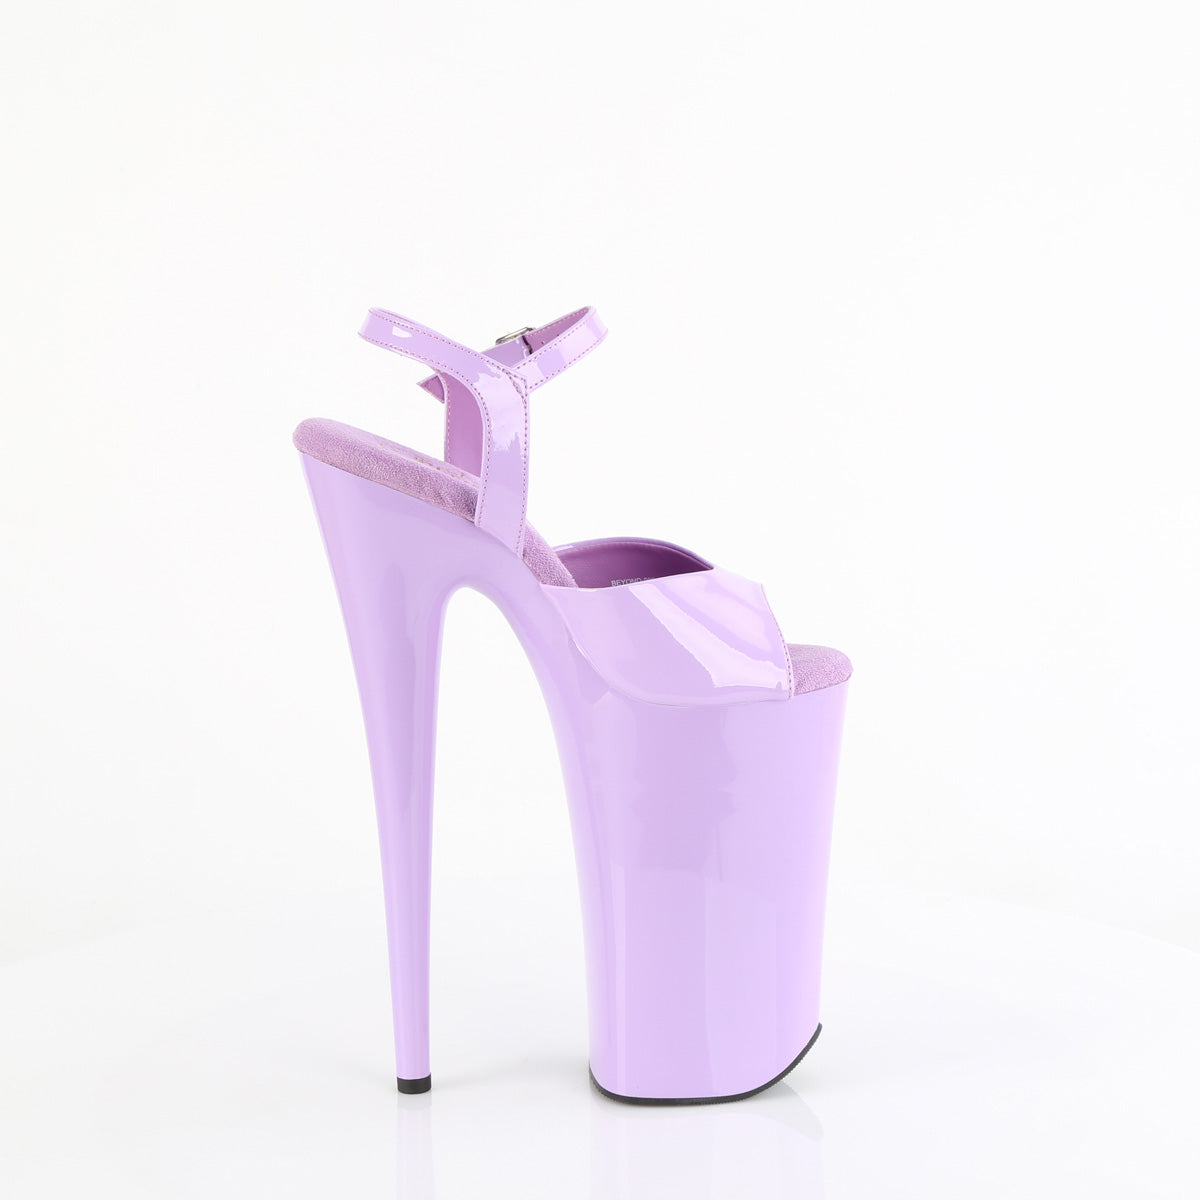 BEYOND-009 Pleaser Lavender Patent/Lavender Platform Shoes [Extreme High Heels]